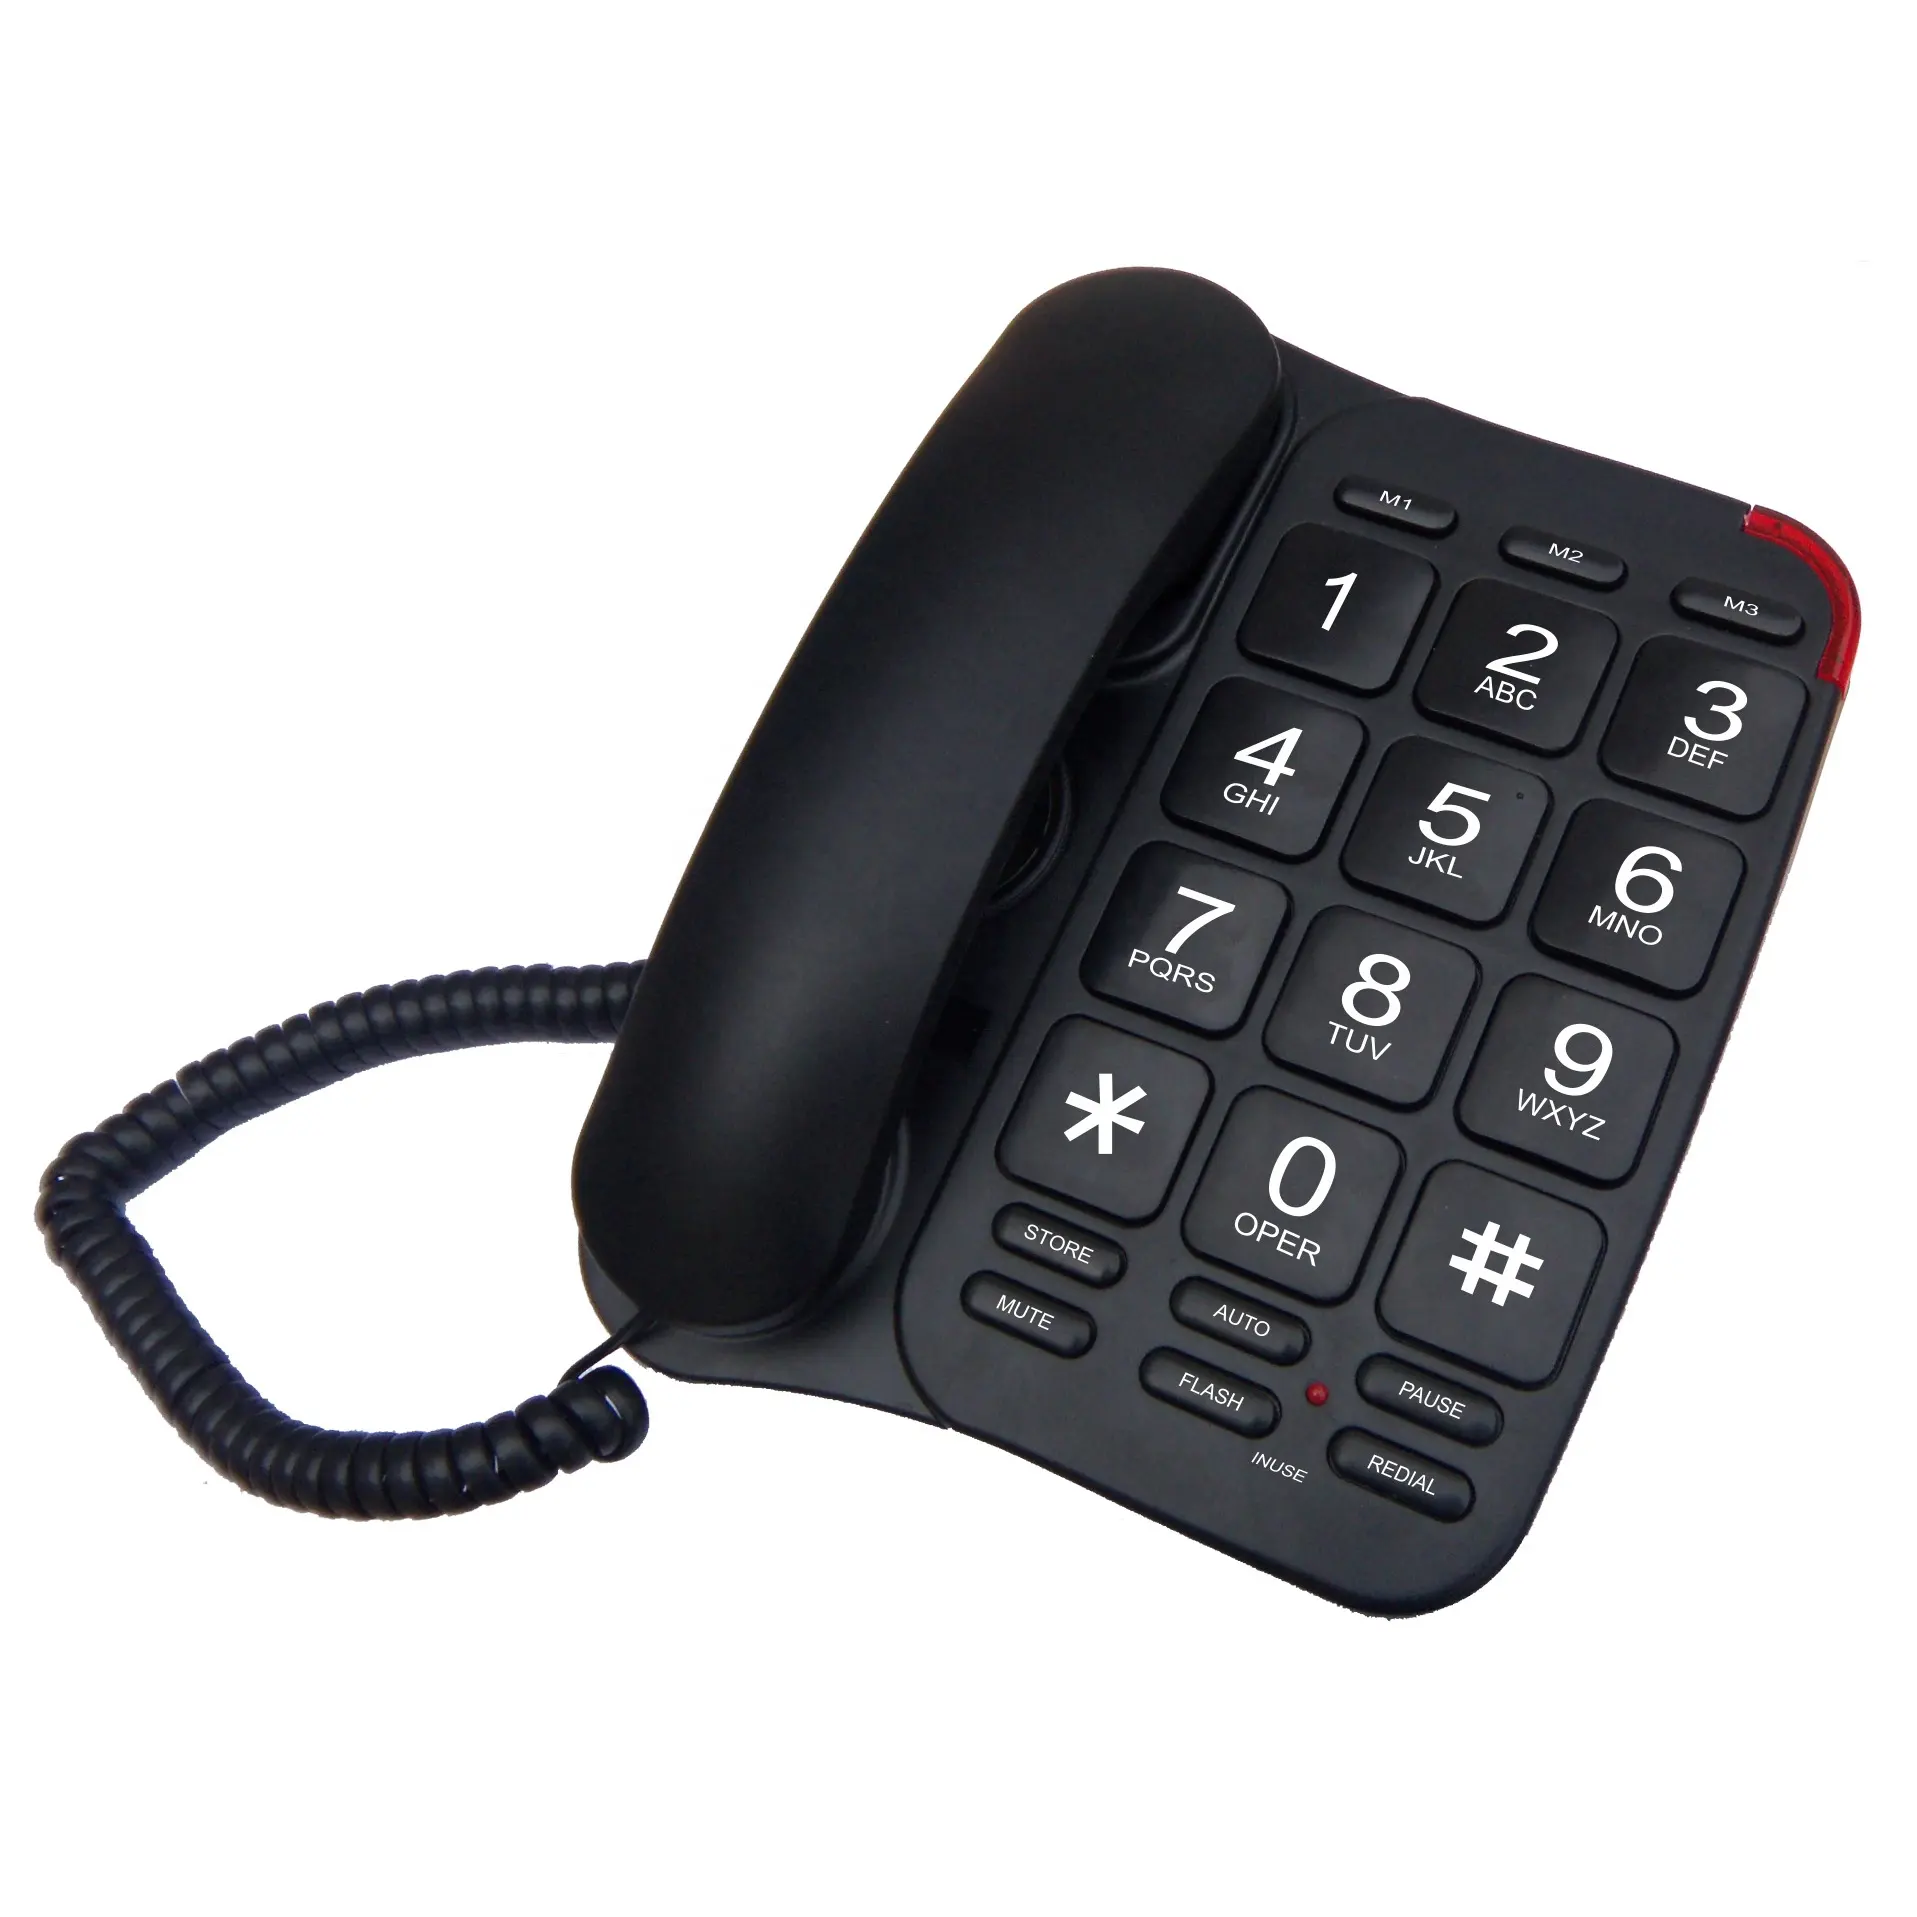 Телефон для пожилых с большими кнопками и кнопками памяти